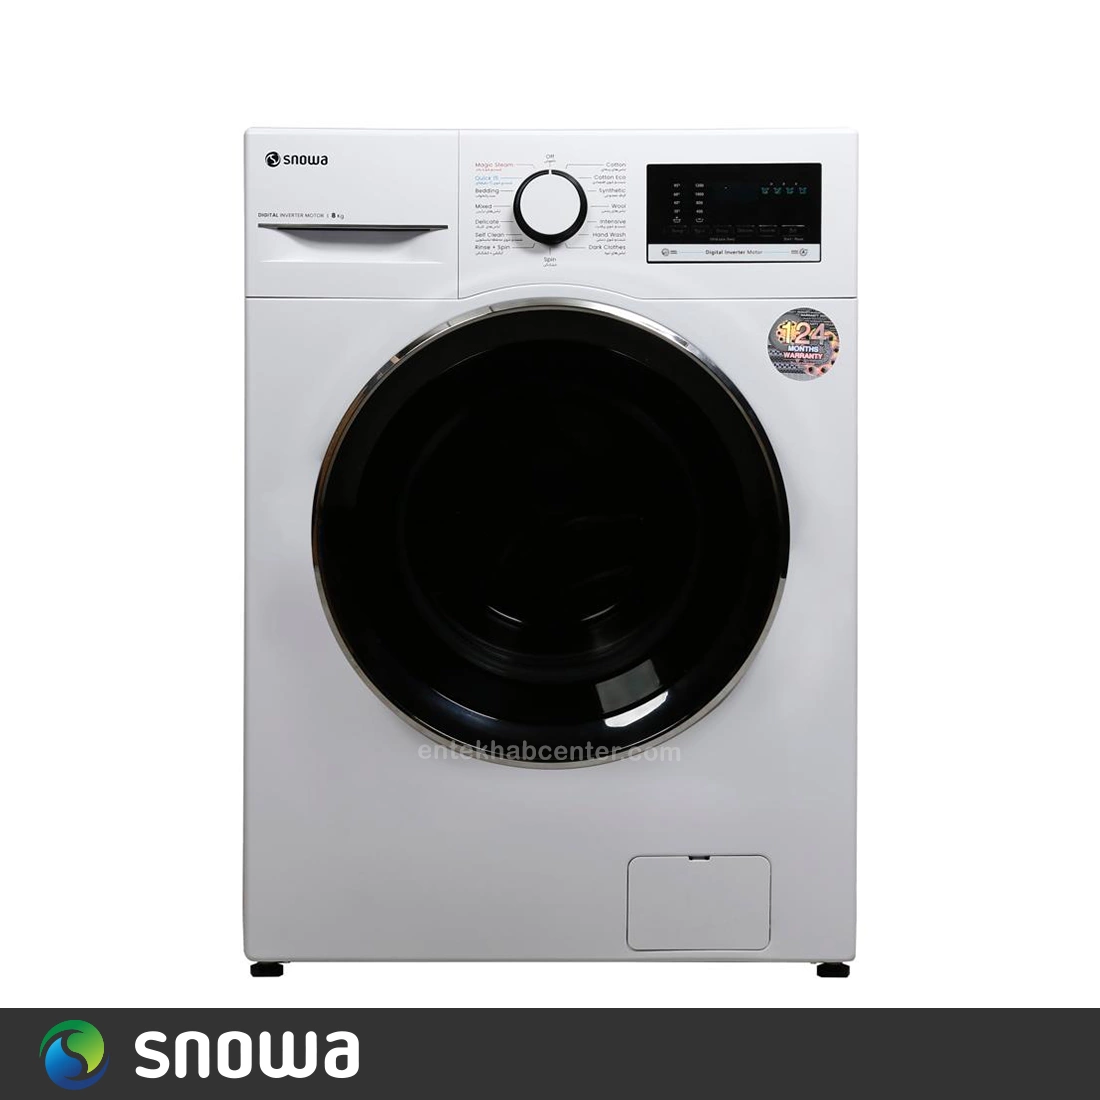 ماشین لباسشویی اسنوا سری اکتا 8 کیلو مدل سفید SWM-84526 – فروشگاه اینترنتیدیجی 618